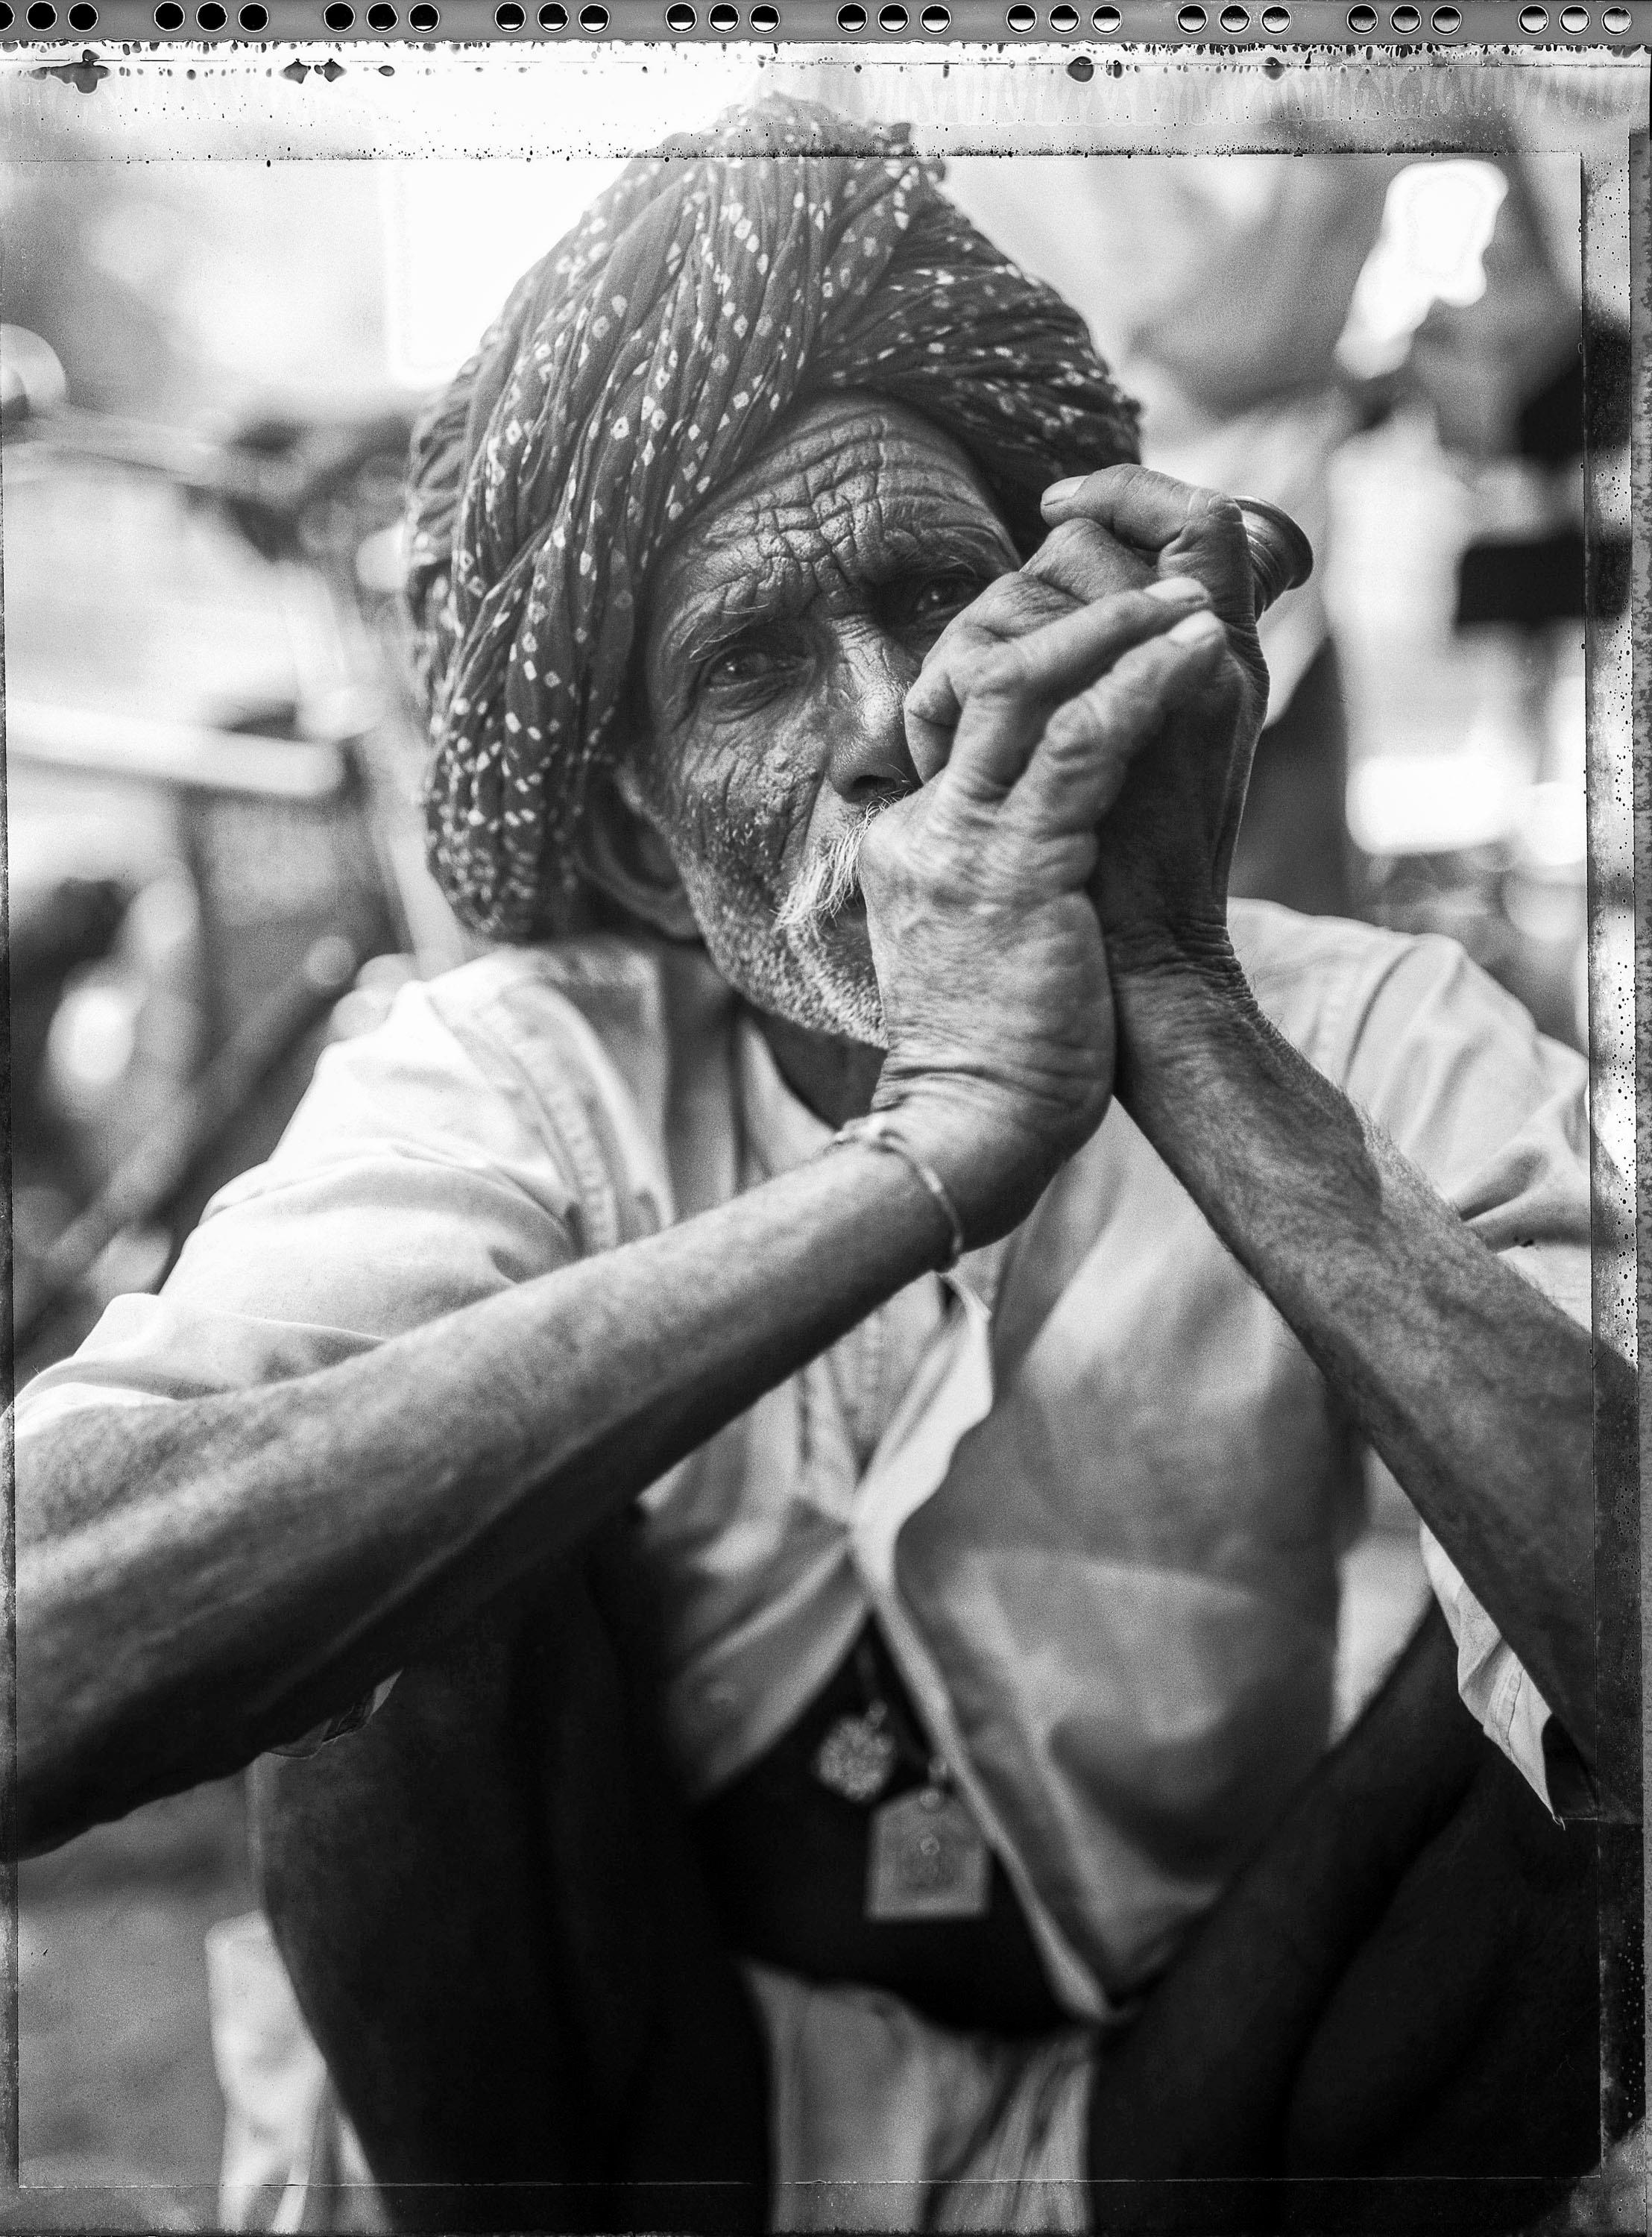 Carlo Bevilacqua Black and White Photograph – Ganja-Raucher -   Rajastan – Indien – (aus  indische Stillleben-Serie)